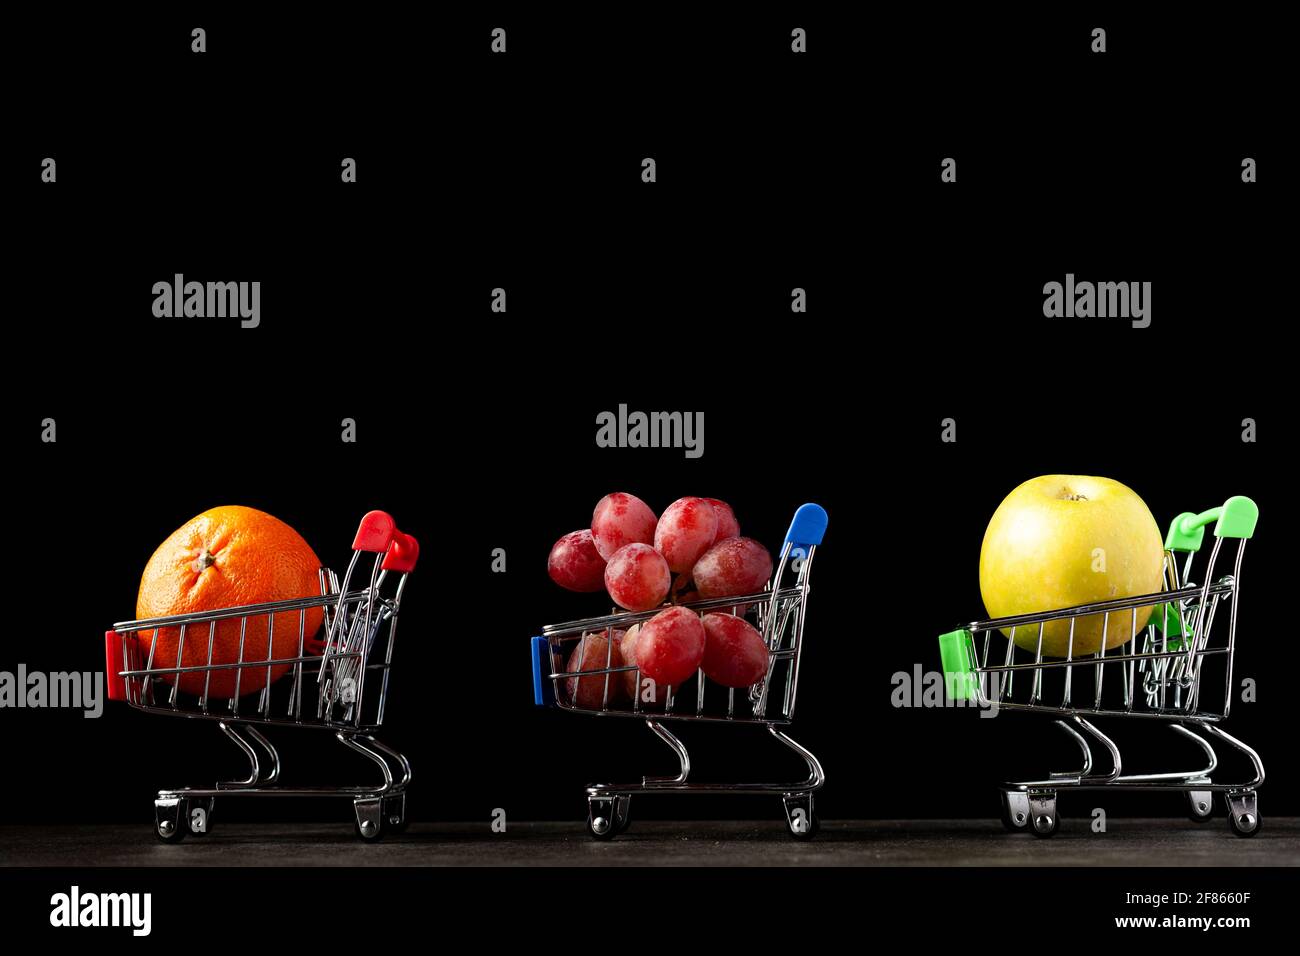 Gros plan, image de fond sombre avec trois chariots de magasinage de jouet rempli de pomme, mandarine et raisins UNE image de concept pour acheter des fruits plus sains a Banque D'Images